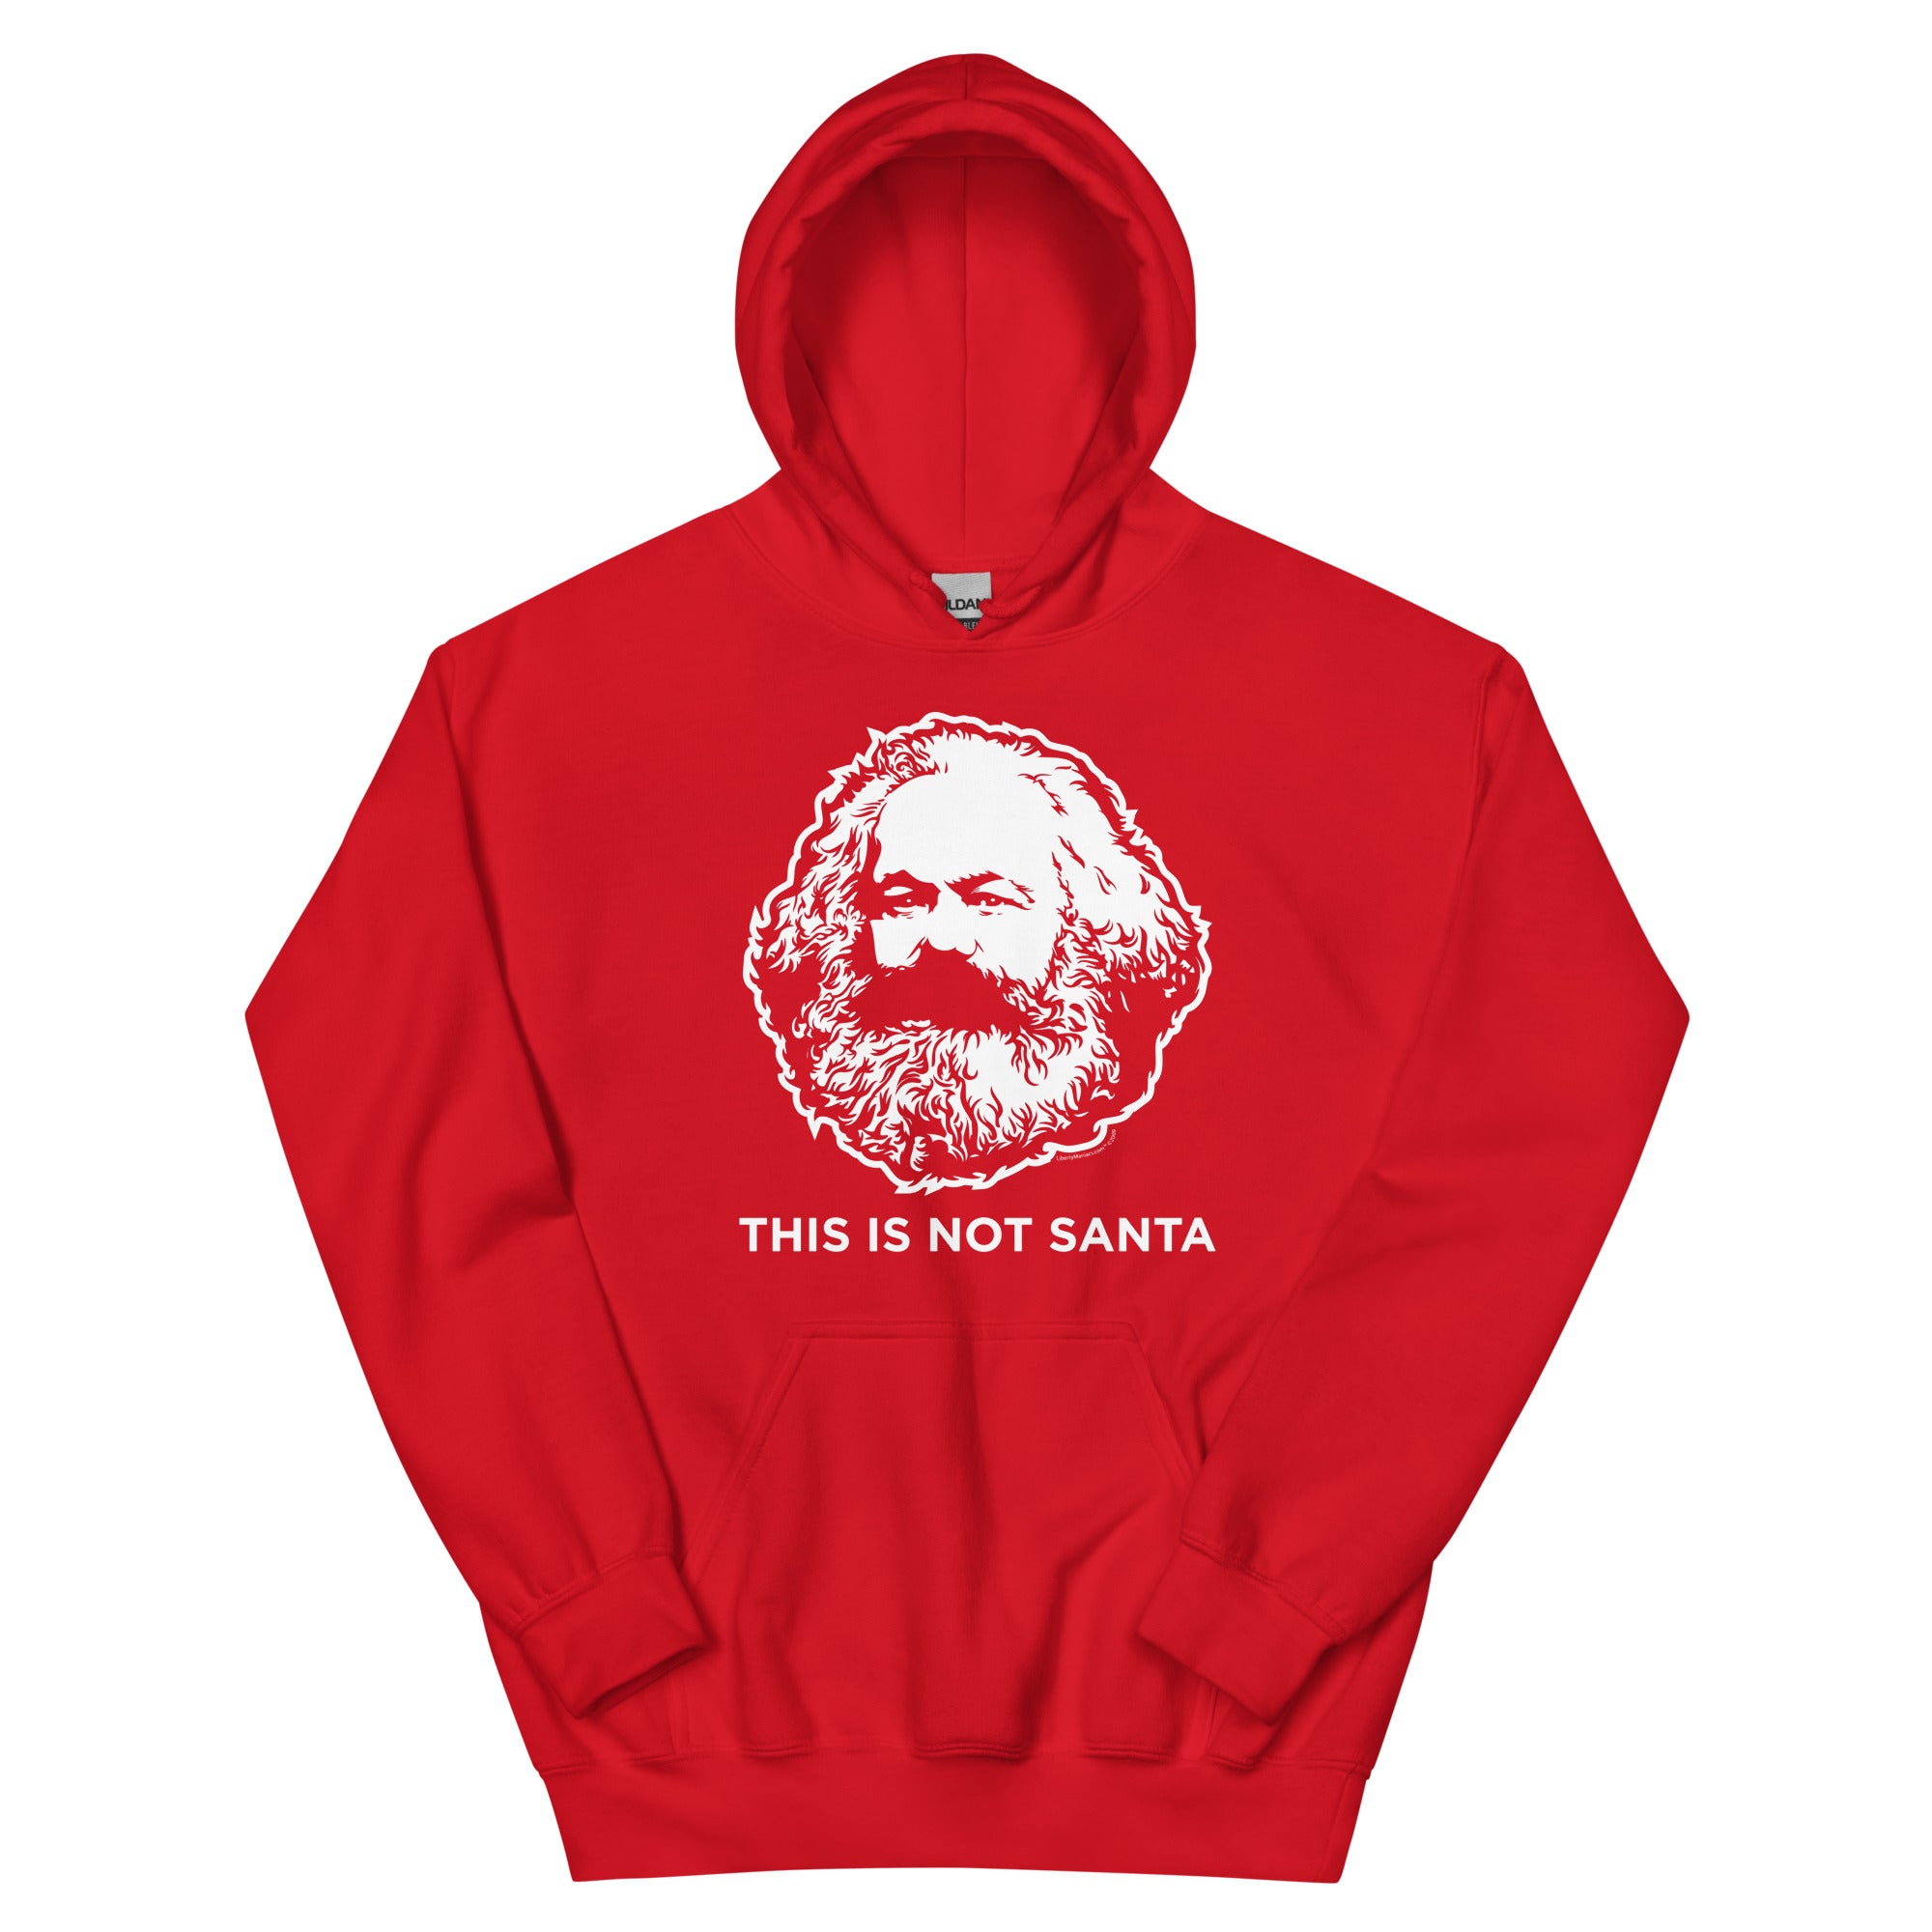 This Is Not Santa Sweatshirt